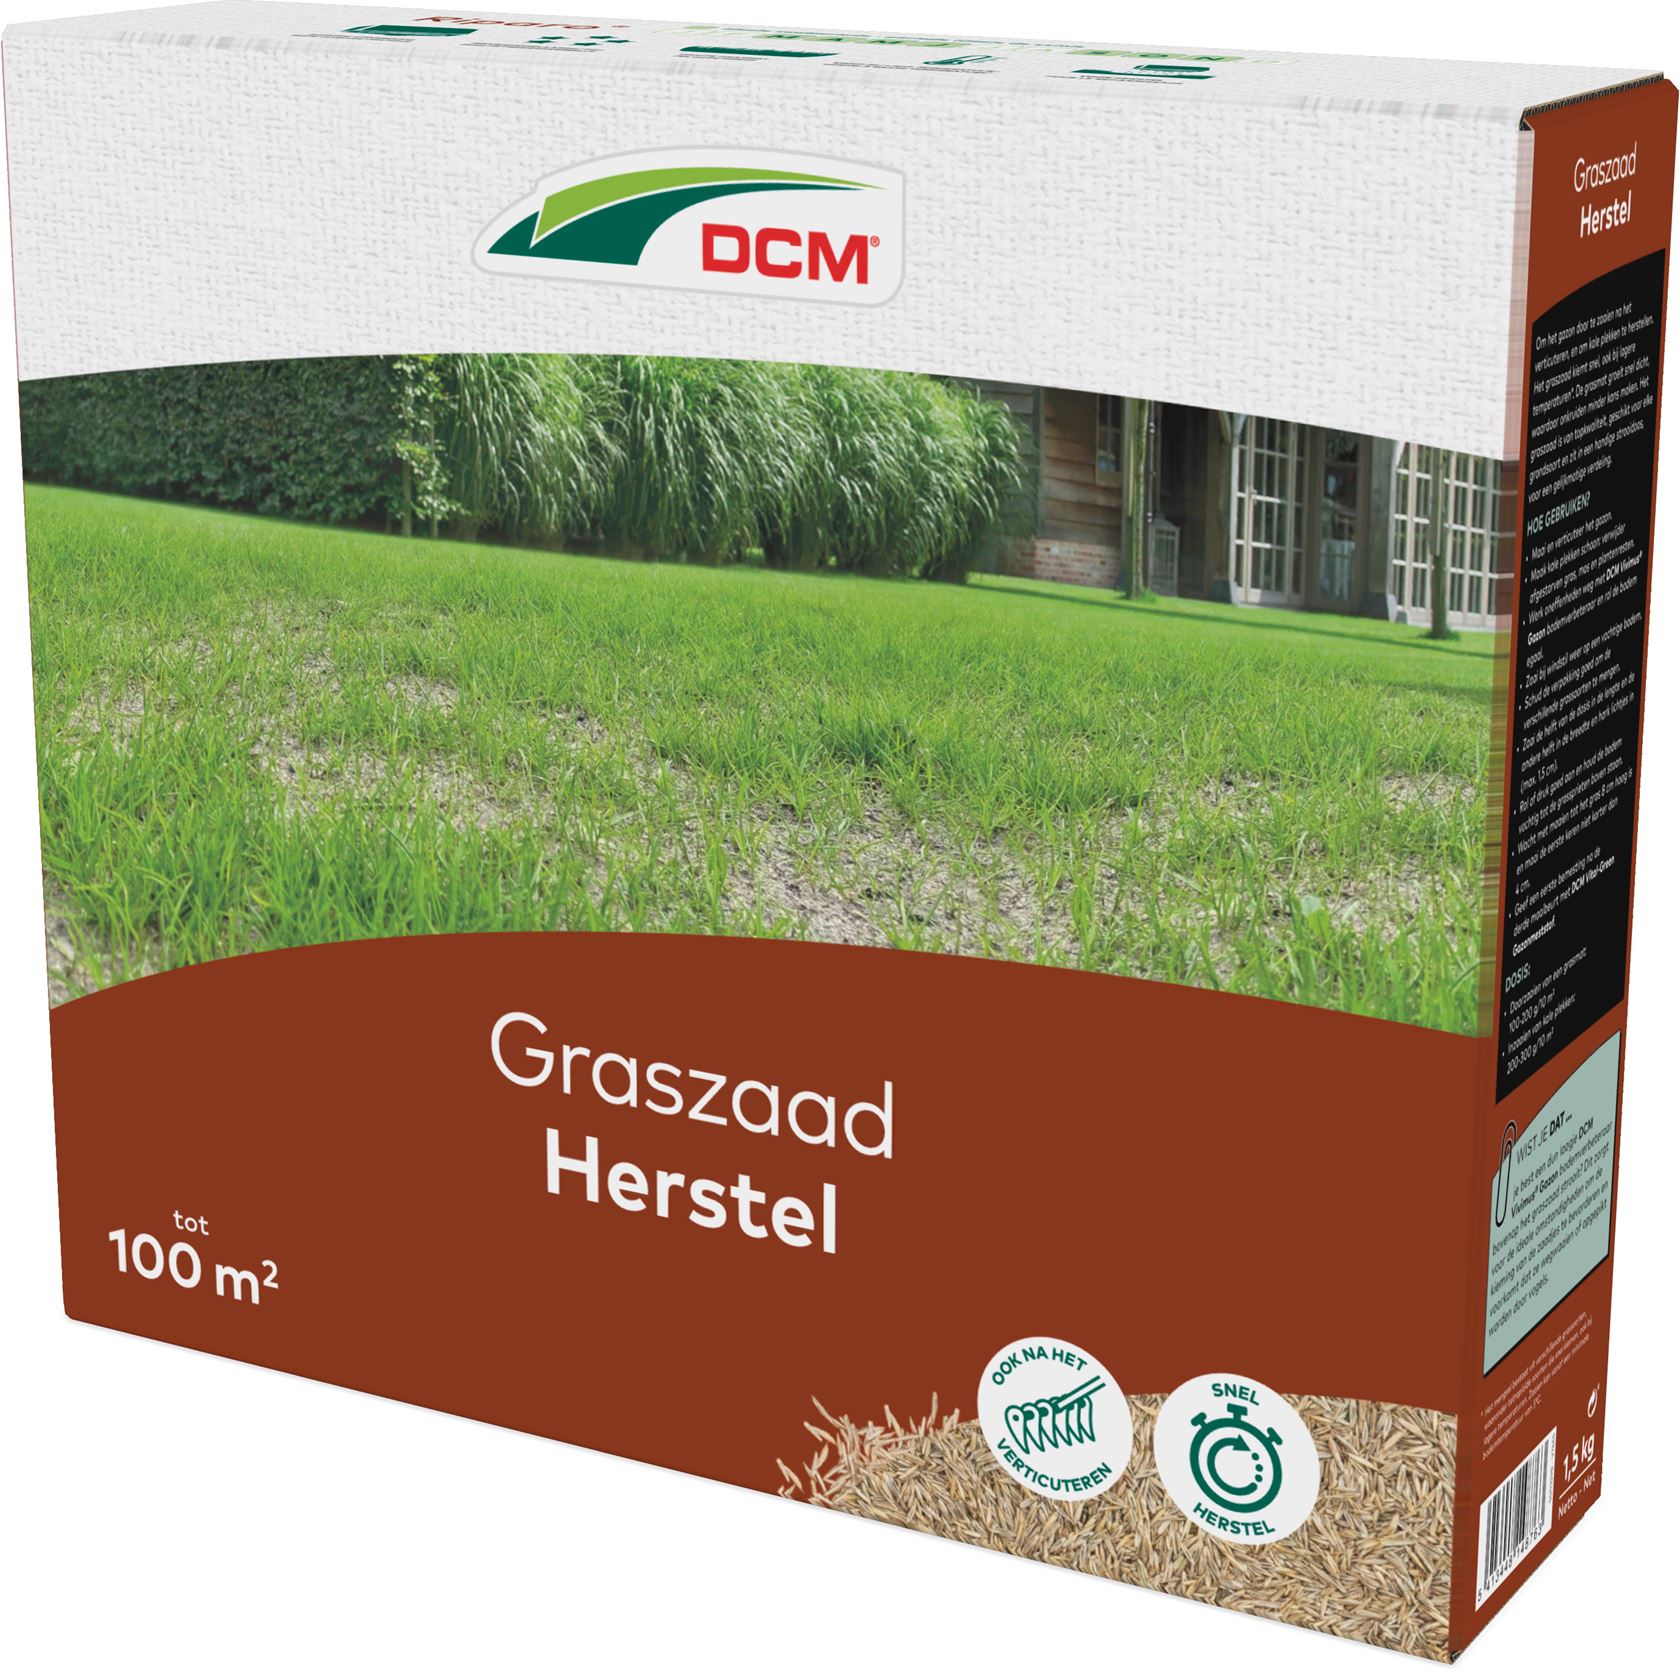 DCM-Graszaad-Herstel-1-5KG